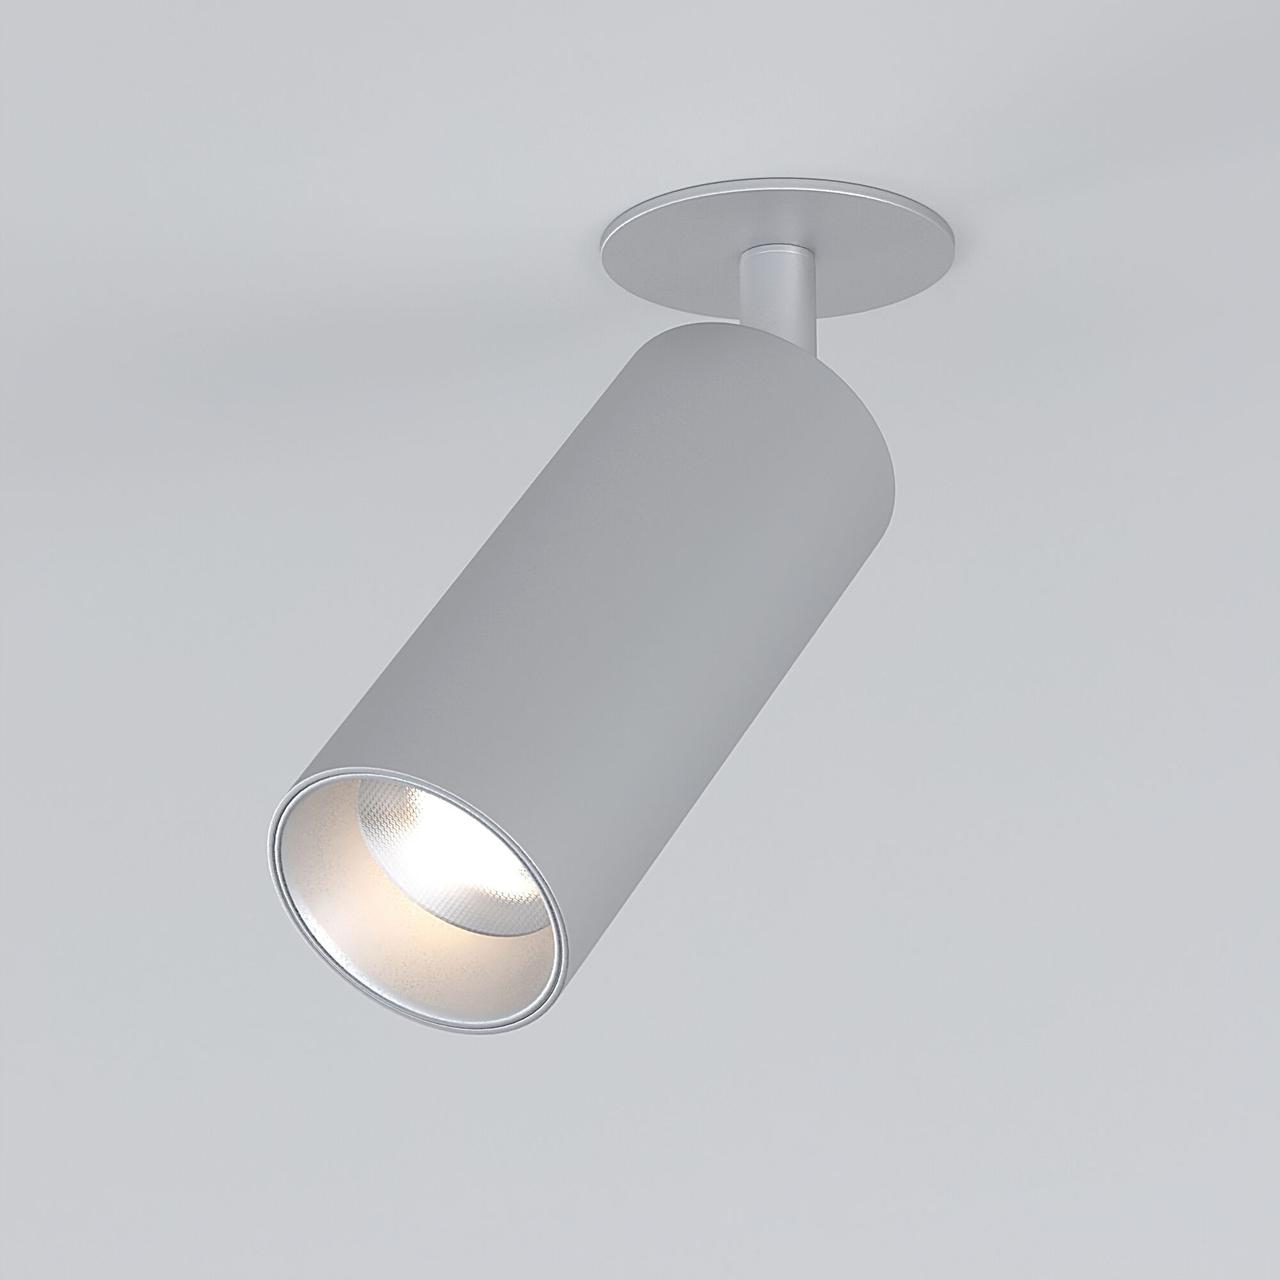 25052/LED 10W 4200K серебро Встраиваемый светодиодный светильник Diffe